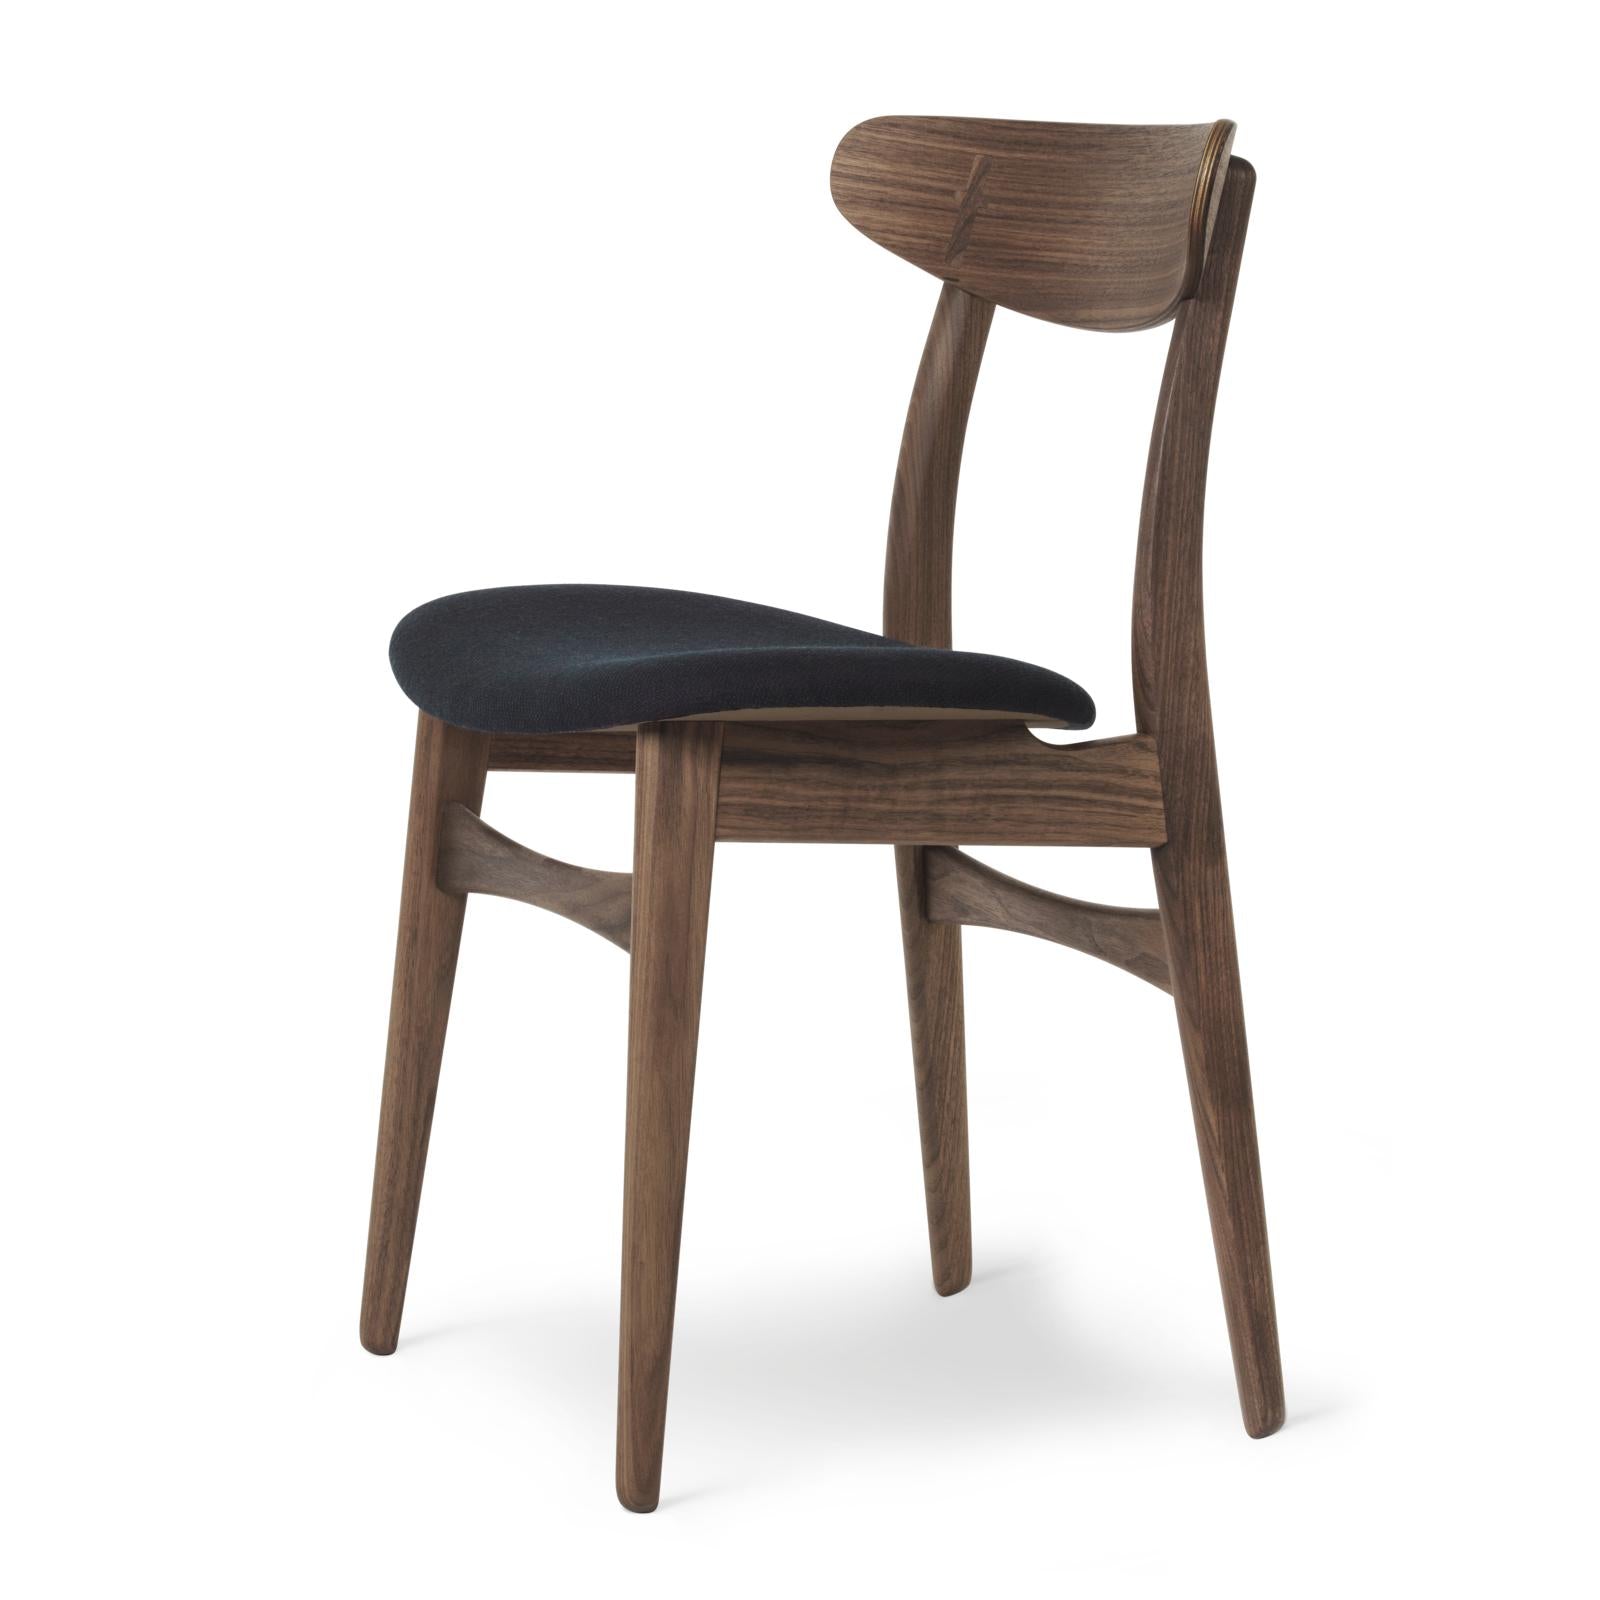 Carl Hansen CH30P -stol, oljad valnöt, svart tyg